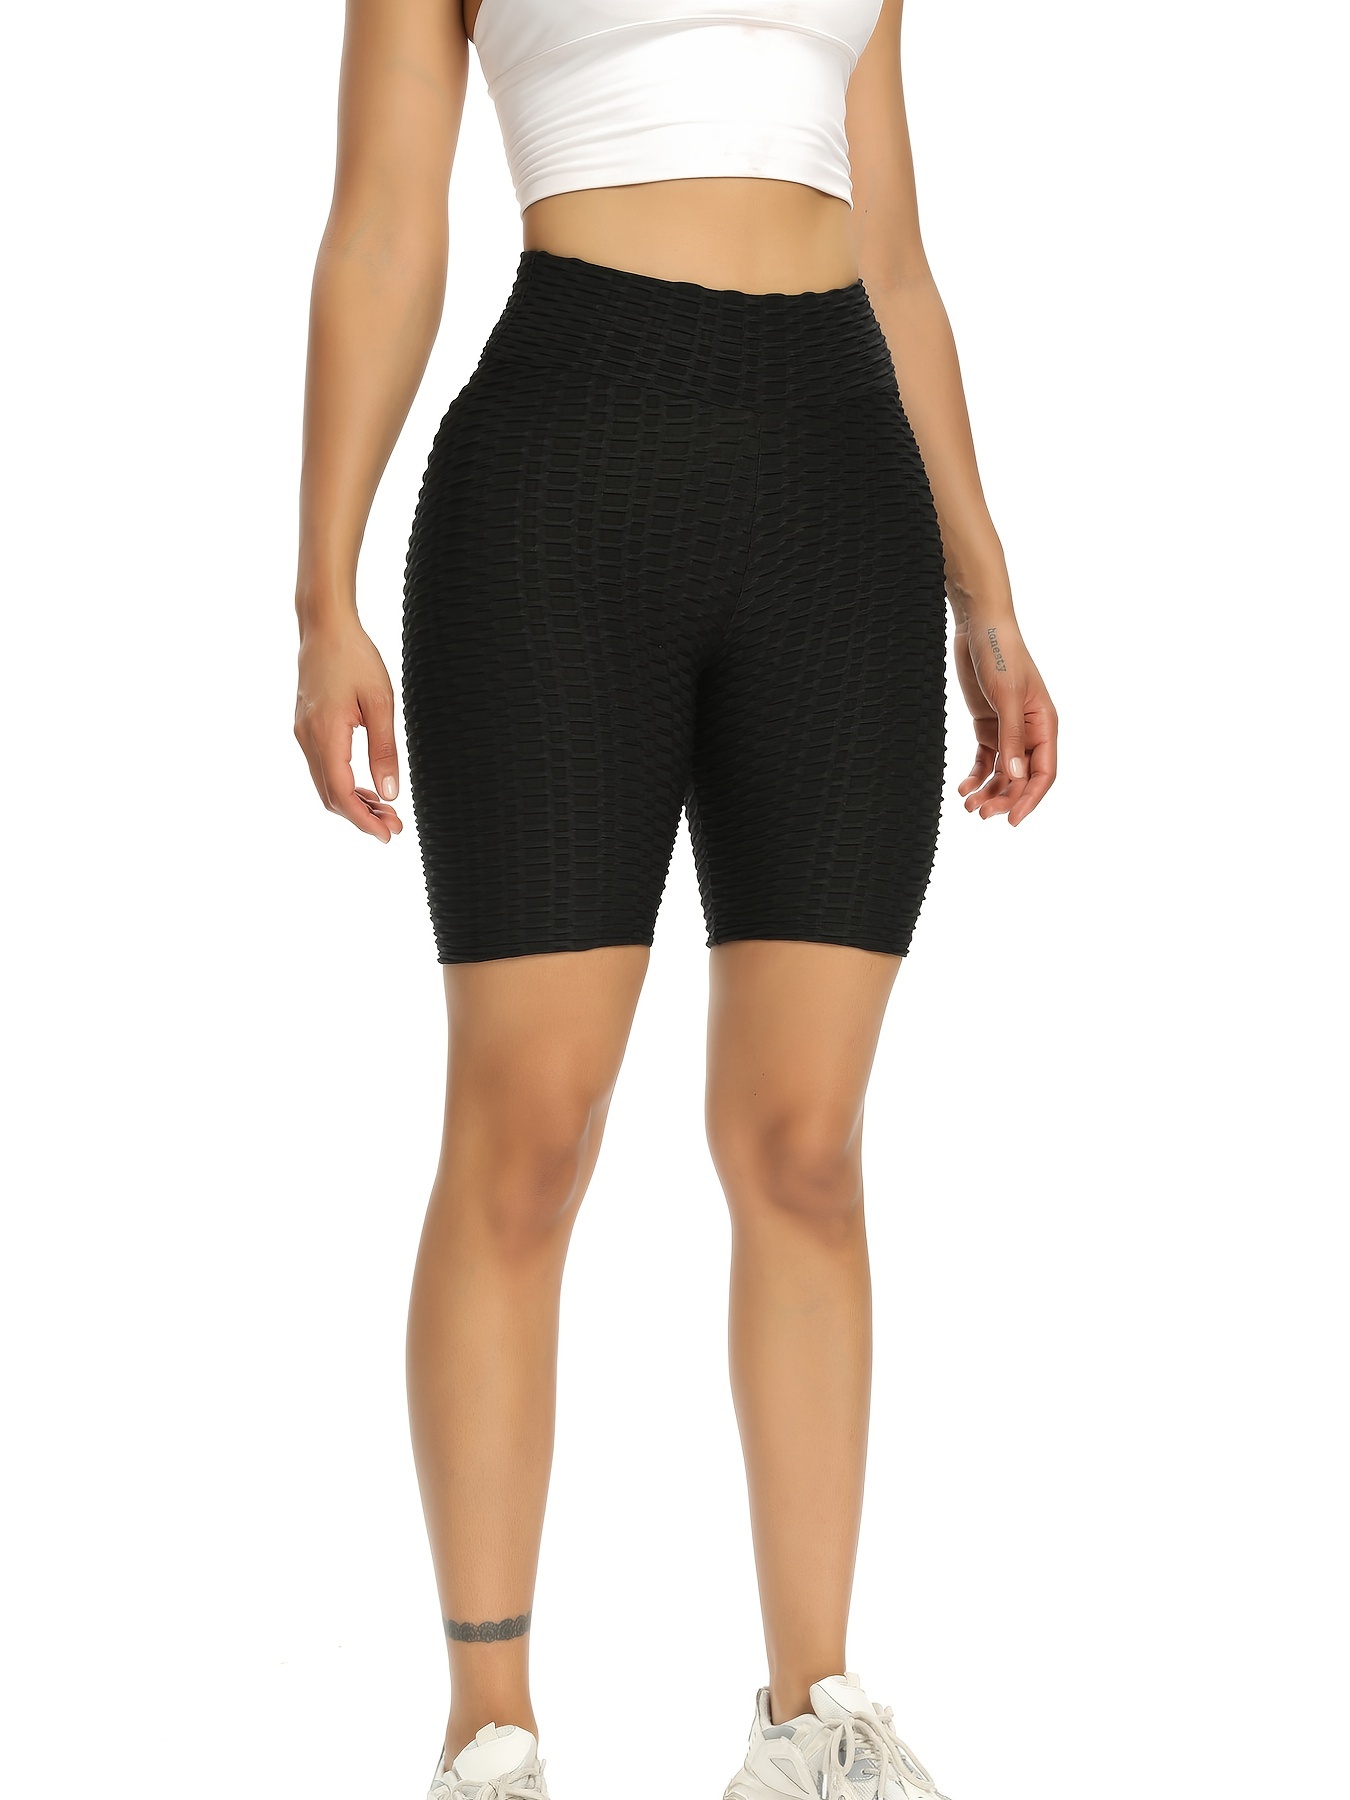  Leggings for Women Honeycomb Textured Biker Shorts